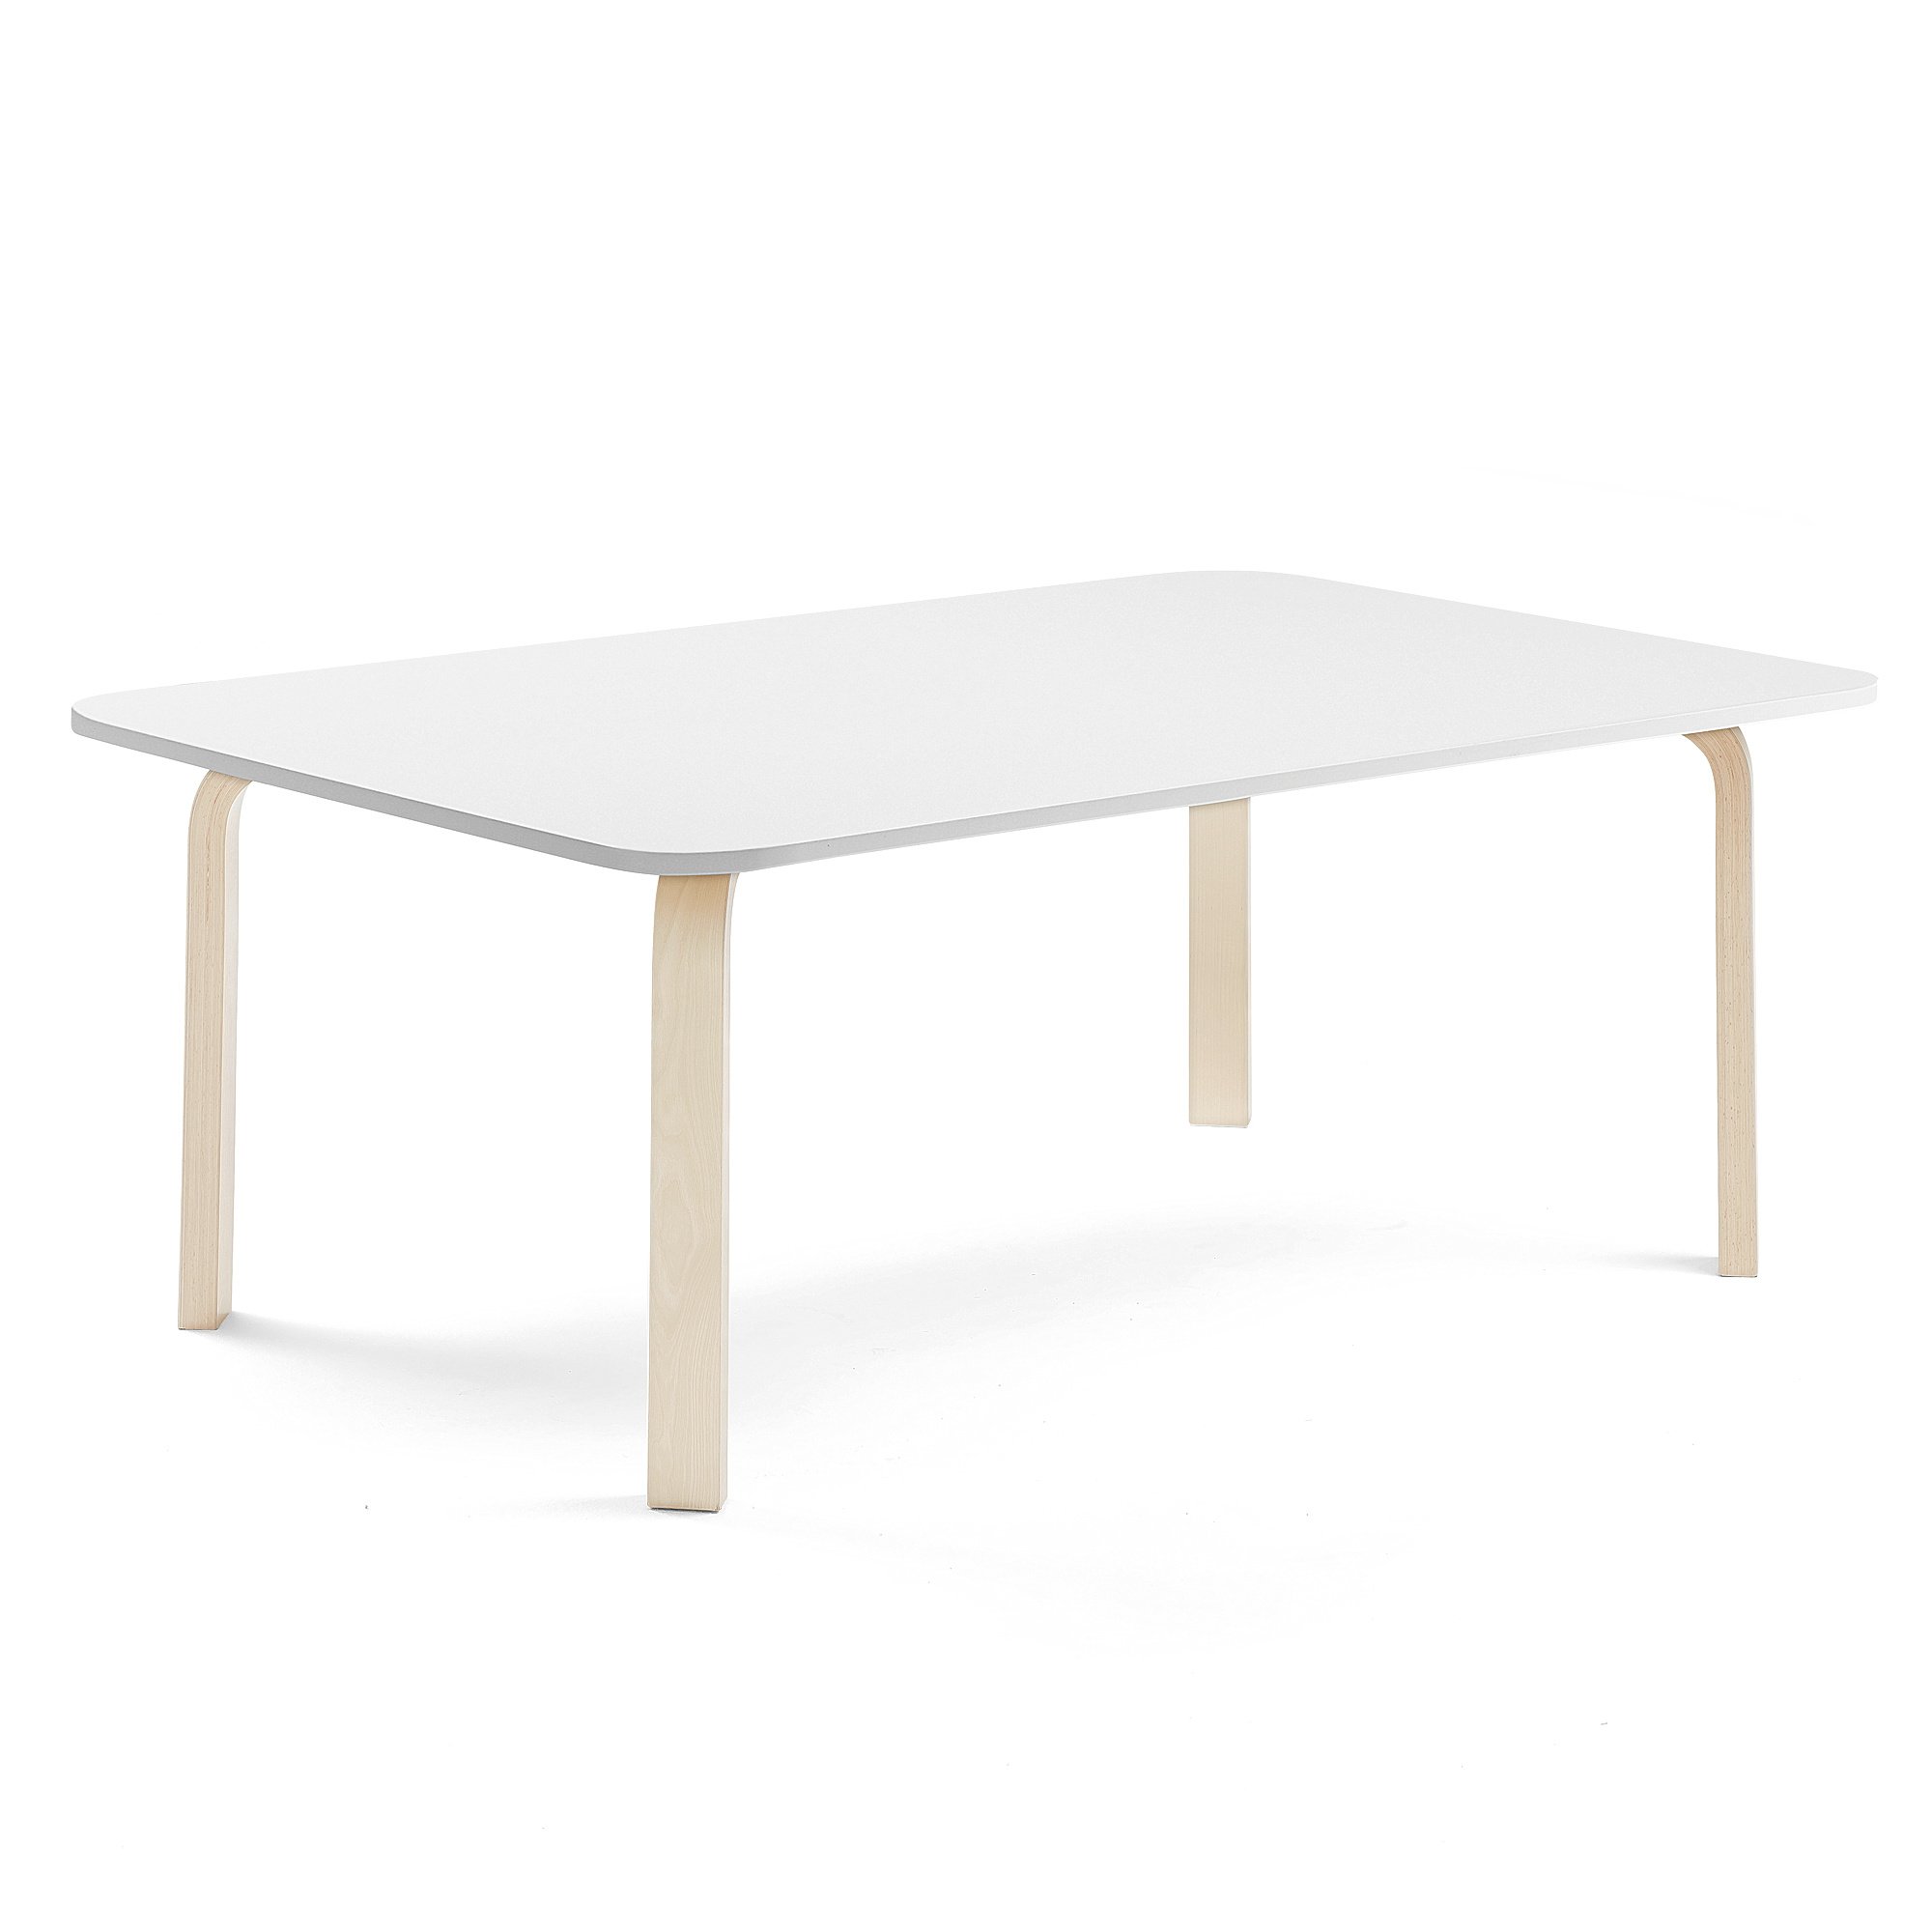 Stůl ELTON, 1800x800x530 mm, bříza, akustická HPL deska, bílá